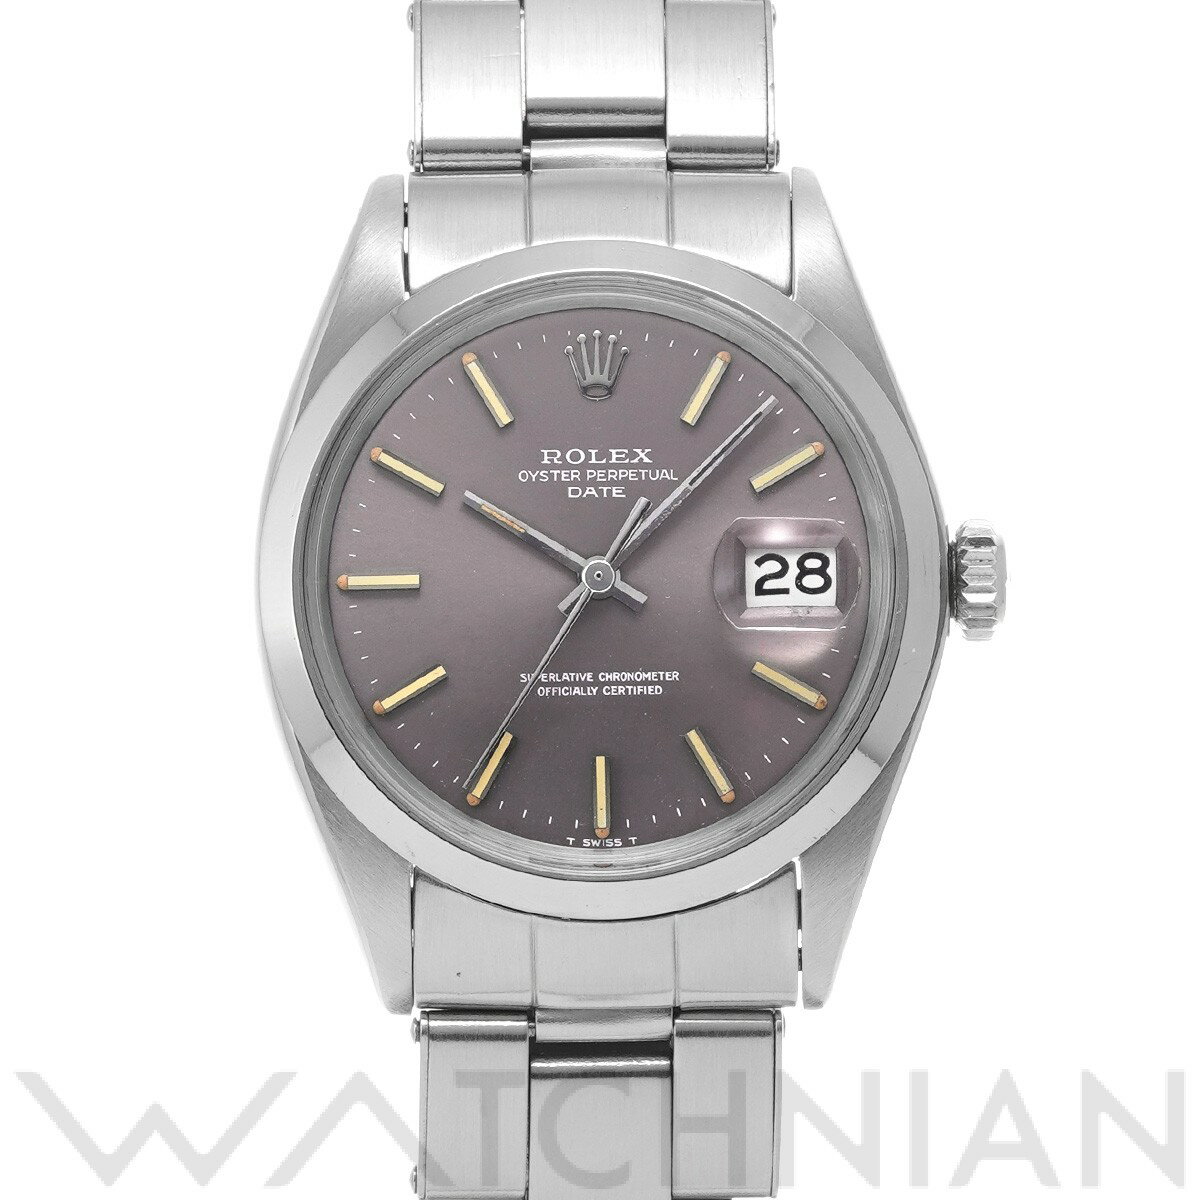 【中古】 ロレックス ROLEX オイスターパーペチュアル デイト 1500 22番台(1969年頃製造) グレー メンズ 腕時計